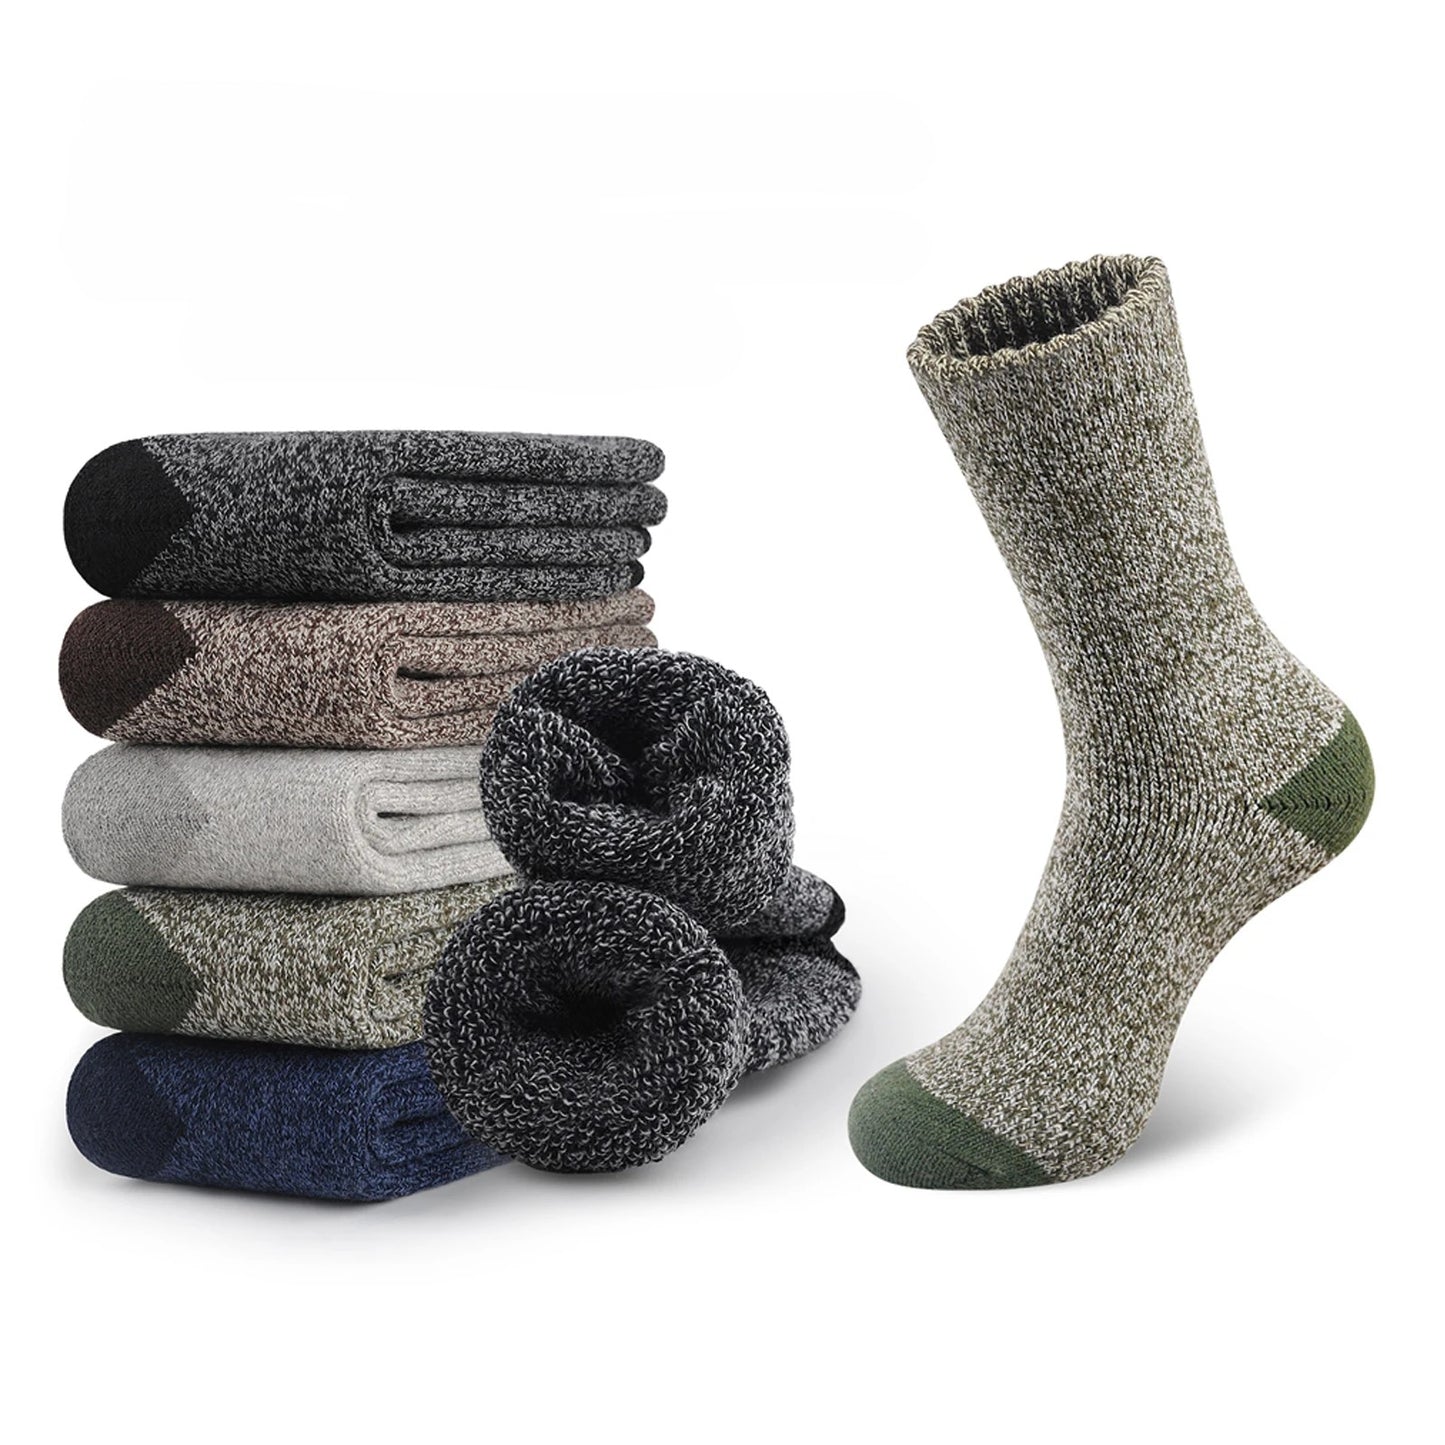 Men's Wool Socks